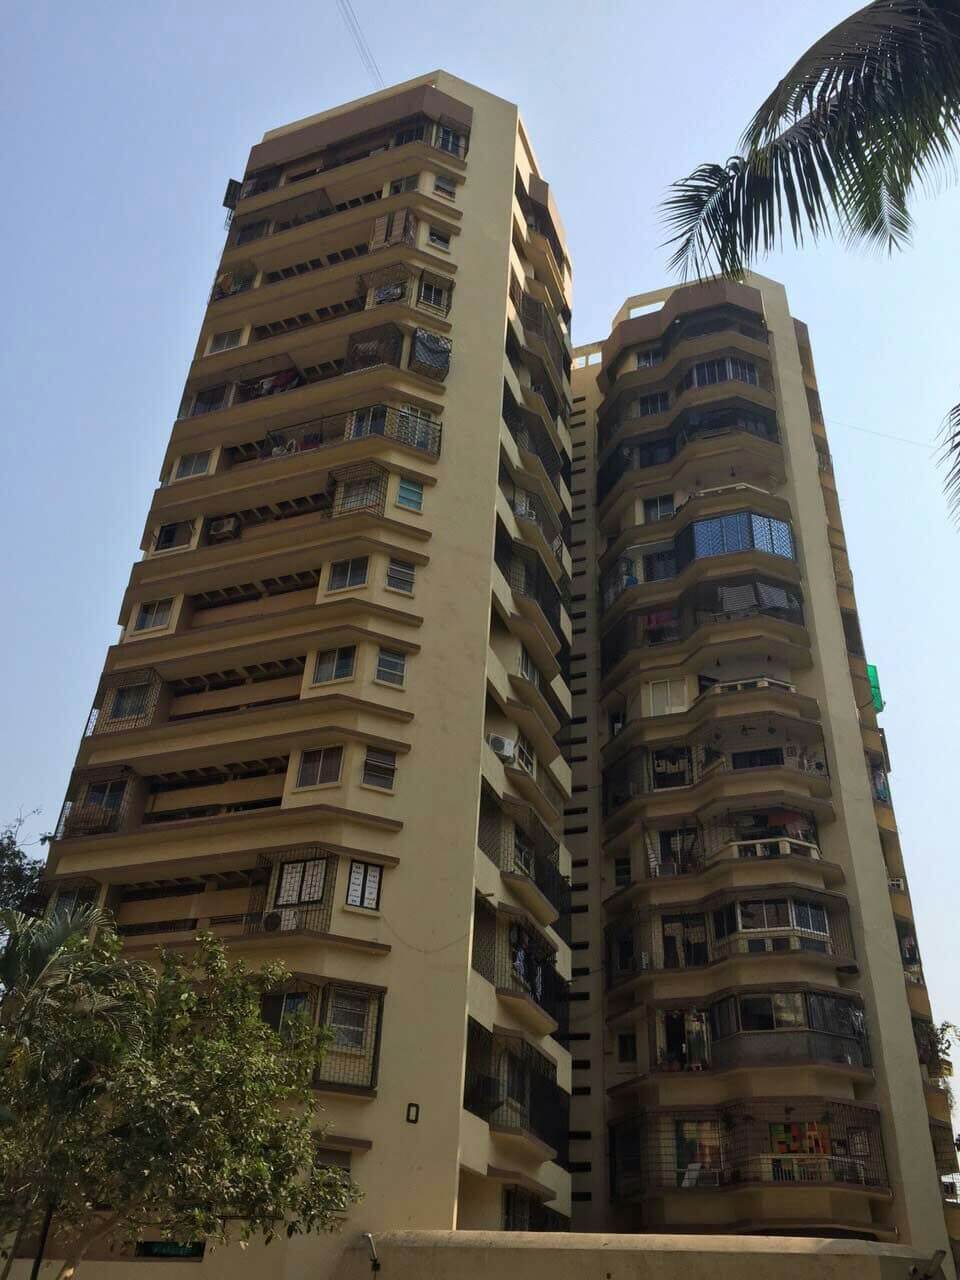 lokhandwala complex mumbai